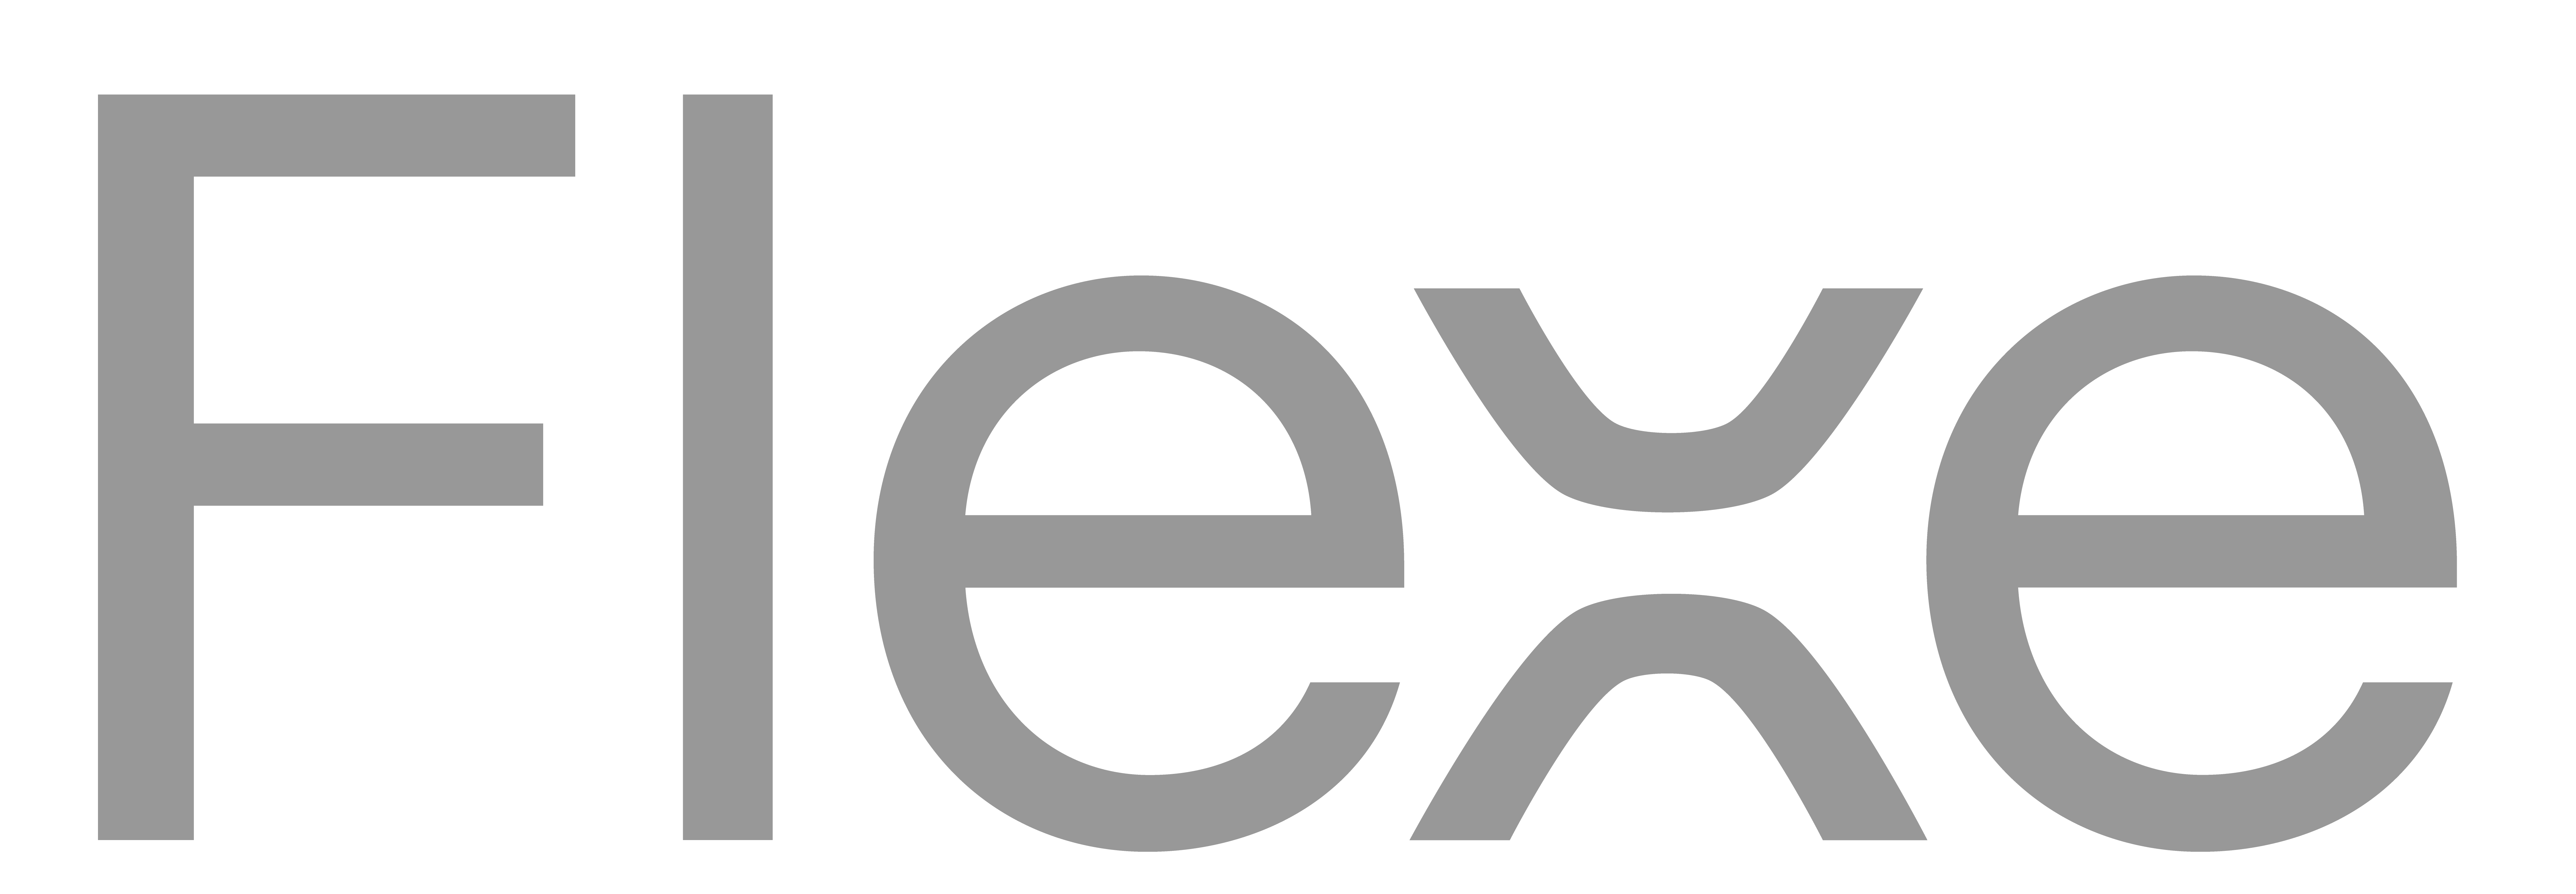 flexe logo